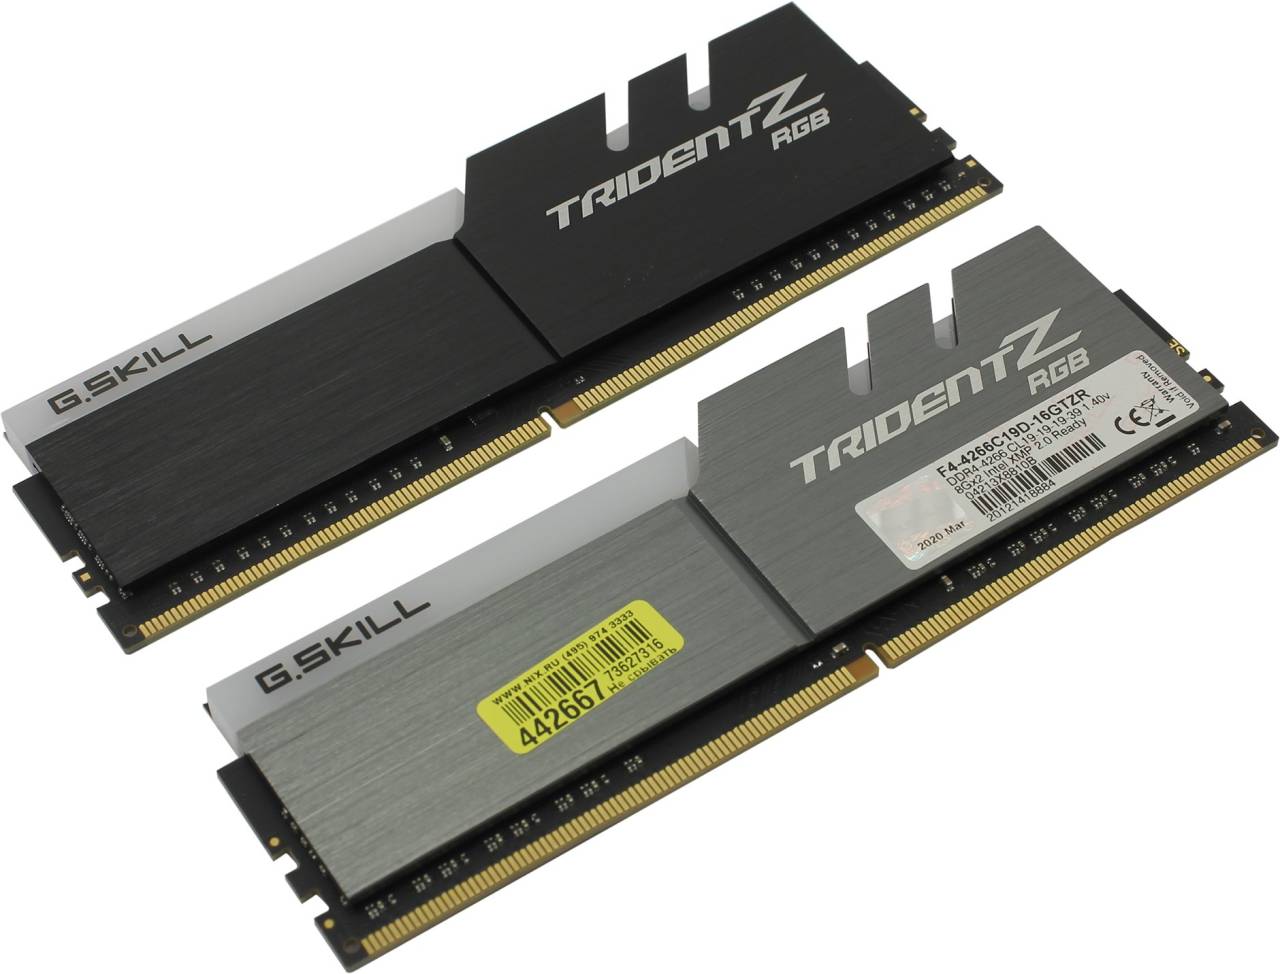    DDR4 DIMM 16Gb PC-34100 G.Skill TridentZ RGB [F4-4266C19D-16GTZR] KIT 2*8Gb CL19